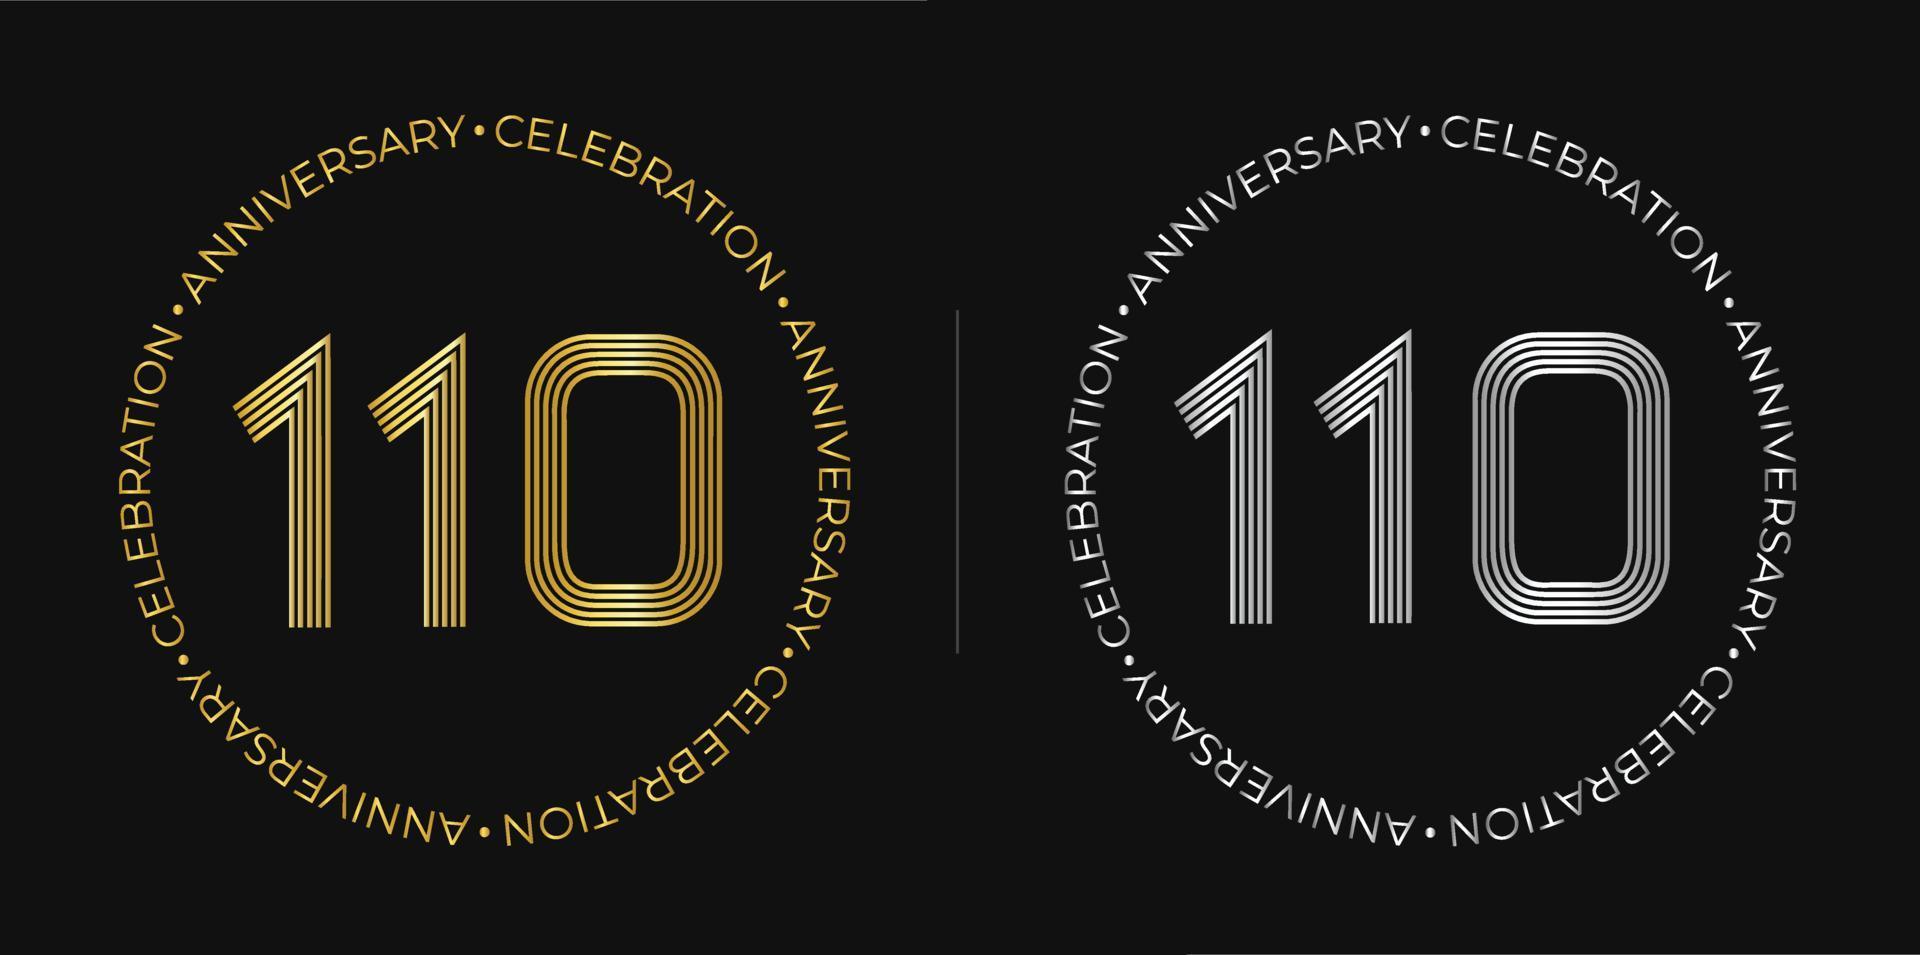 110e anniversaire. bannière de célébration d'anniversaire de cent dix ans aux couleurs dorées et argentées. logo circulaire avec un design original de chiffres aux lignes élégantes. vecteur